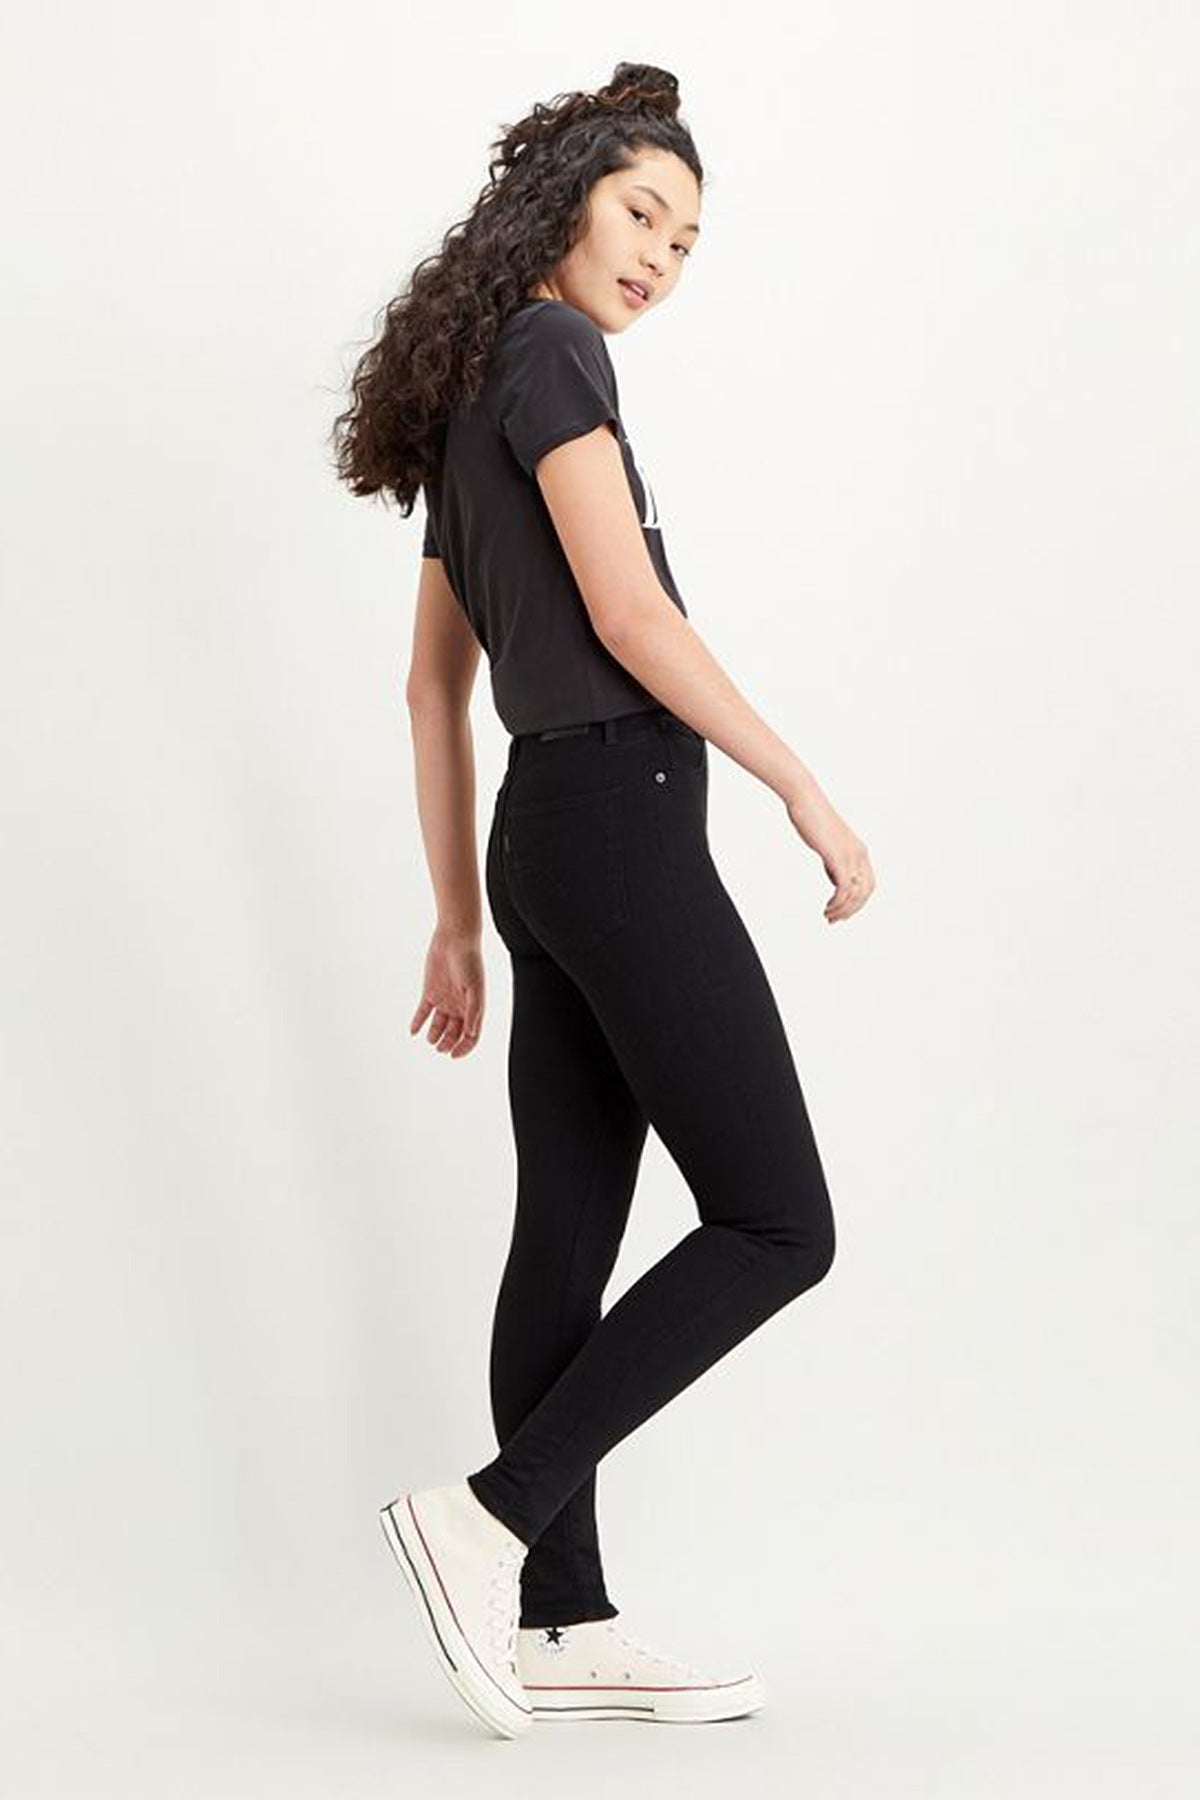 Levi's Yüksek Bel Süper Skinny Mile High Jeans Bayan Kot Pantolon 22791-0052 SİYAH